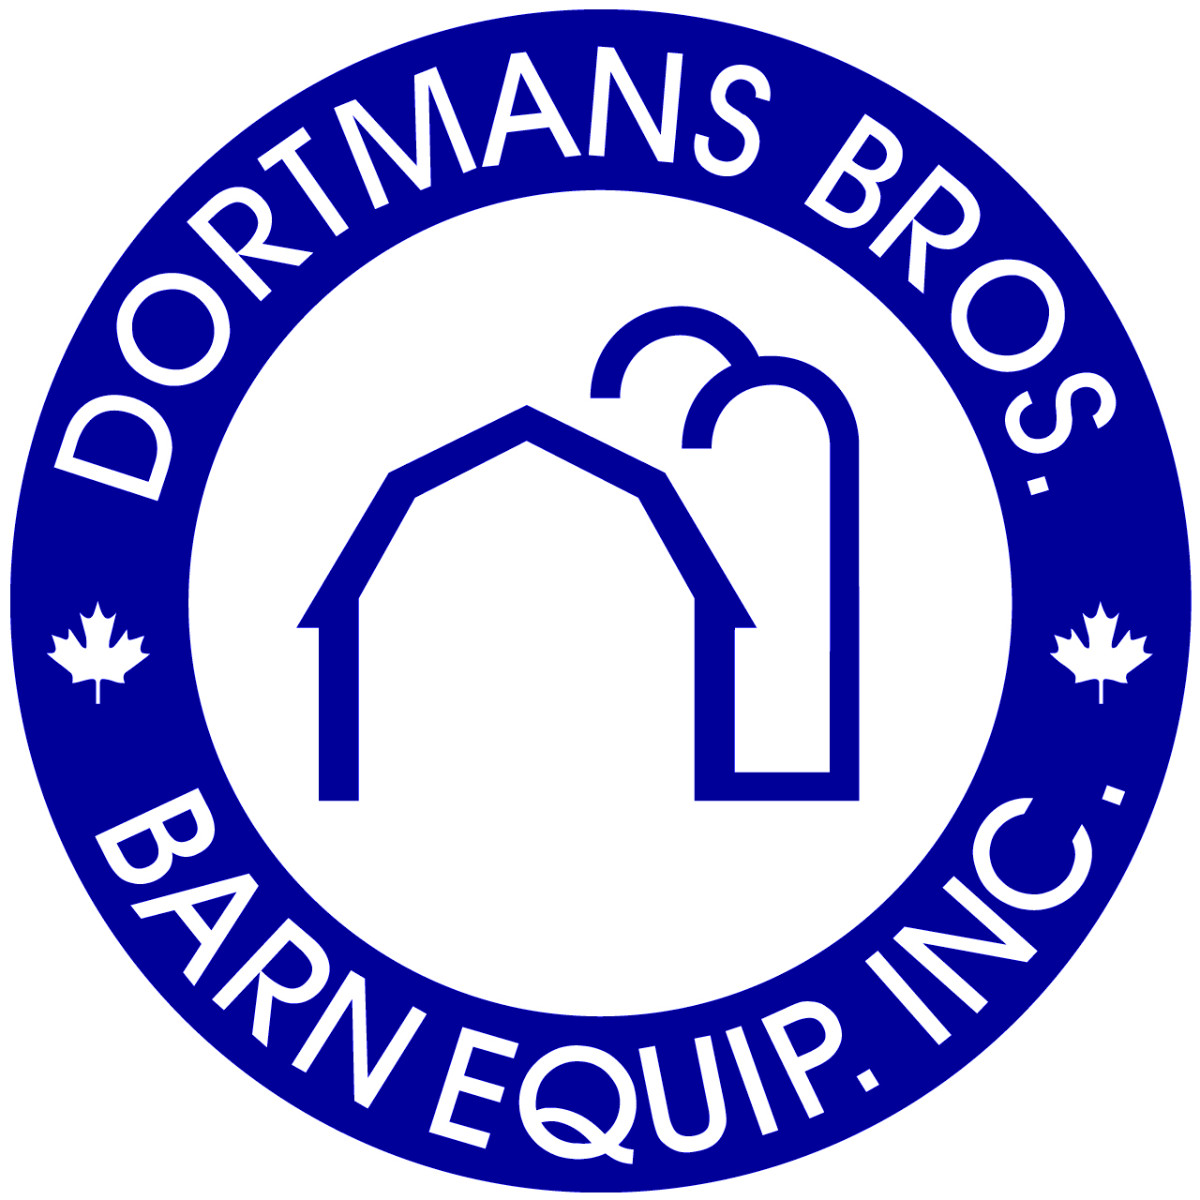 Dortmans_Logo_higher_res.jpg